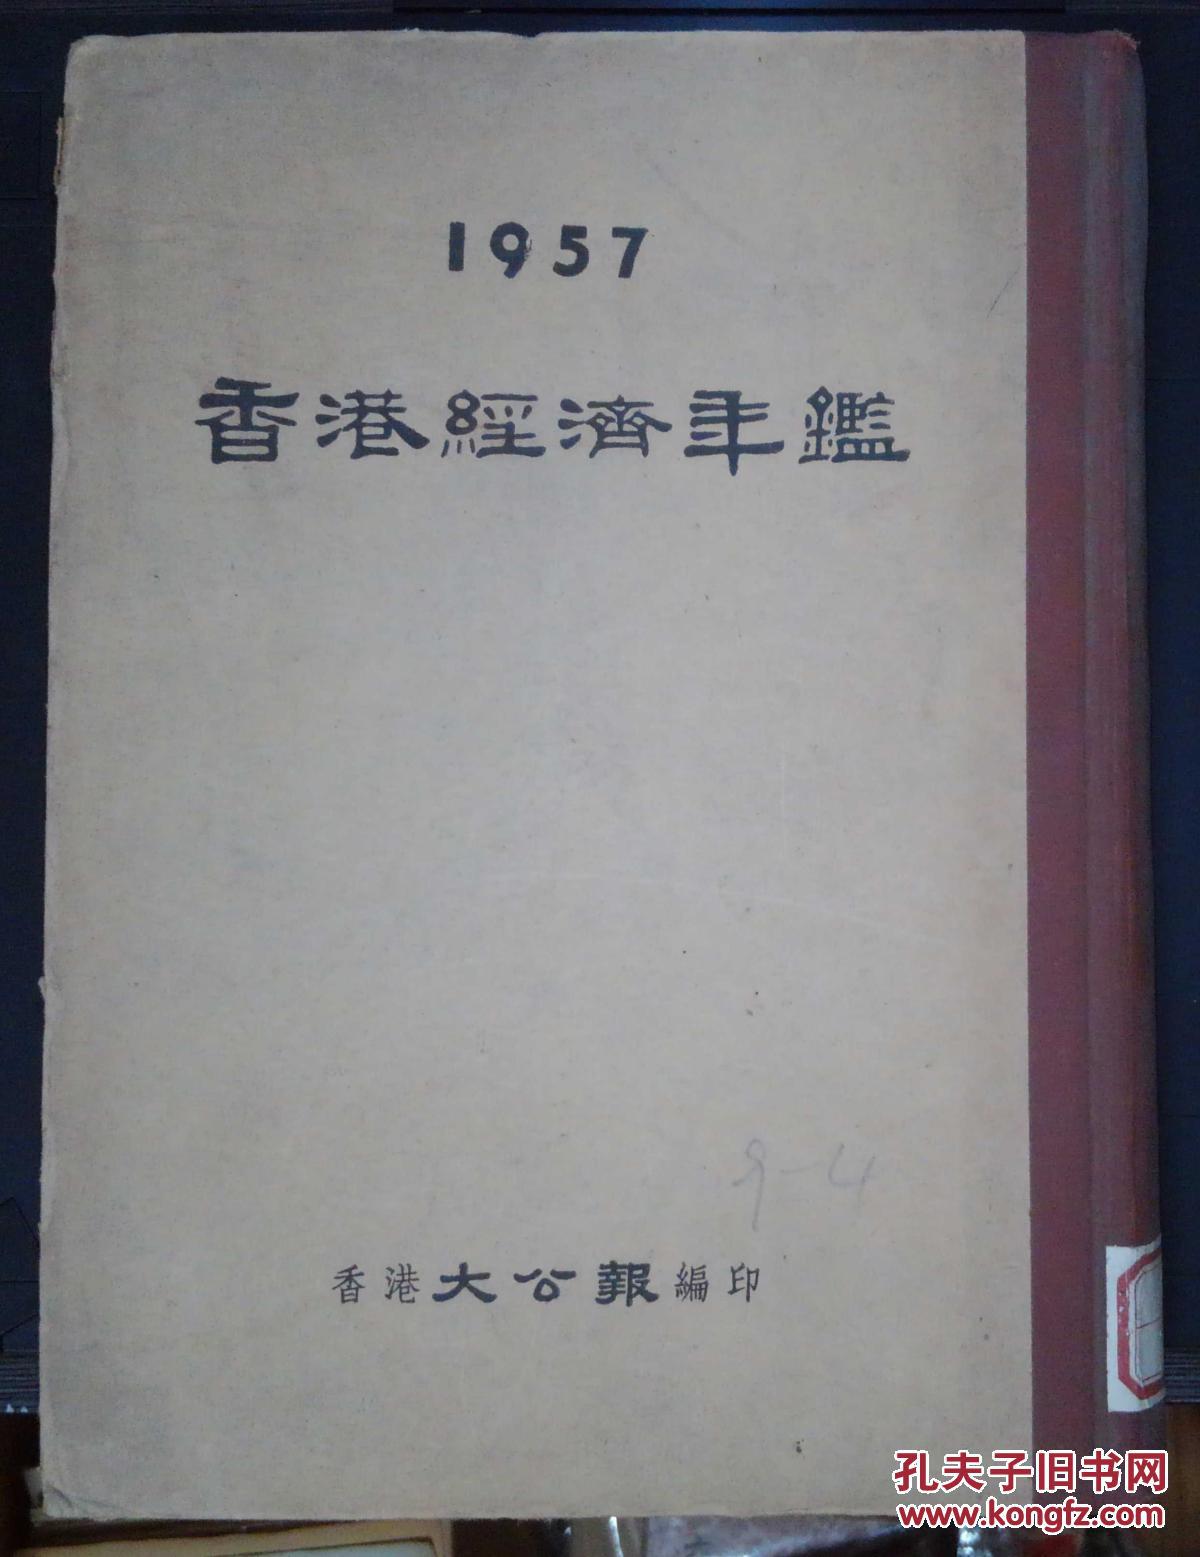 六朝书斋：《香港经济年鉴1957》香港大公报社编印 精装品好